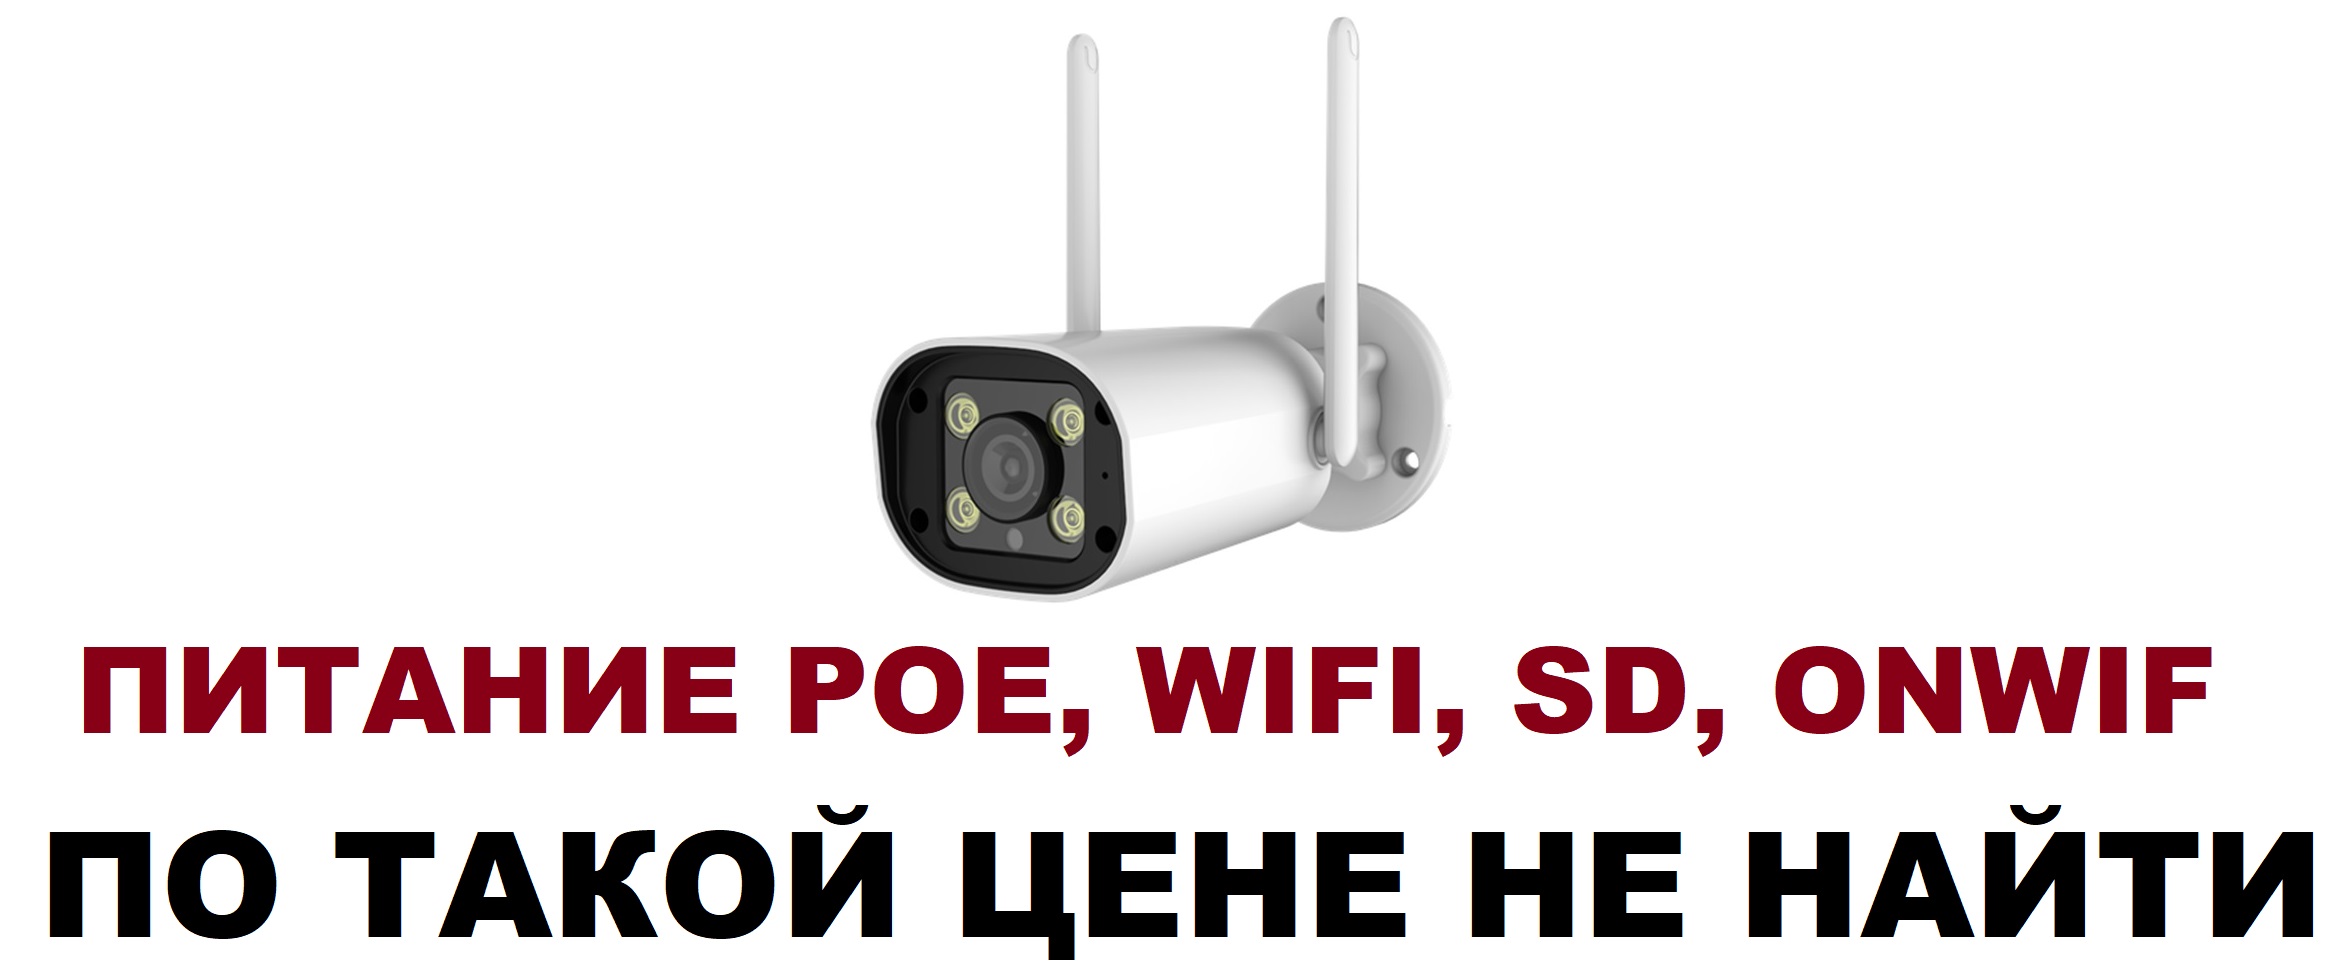 Уличная WiFi IP камера видеокамера 2MP 2 мегапикселя с записью на SD карту, Onwif, питание от POE, просмотр через интернет